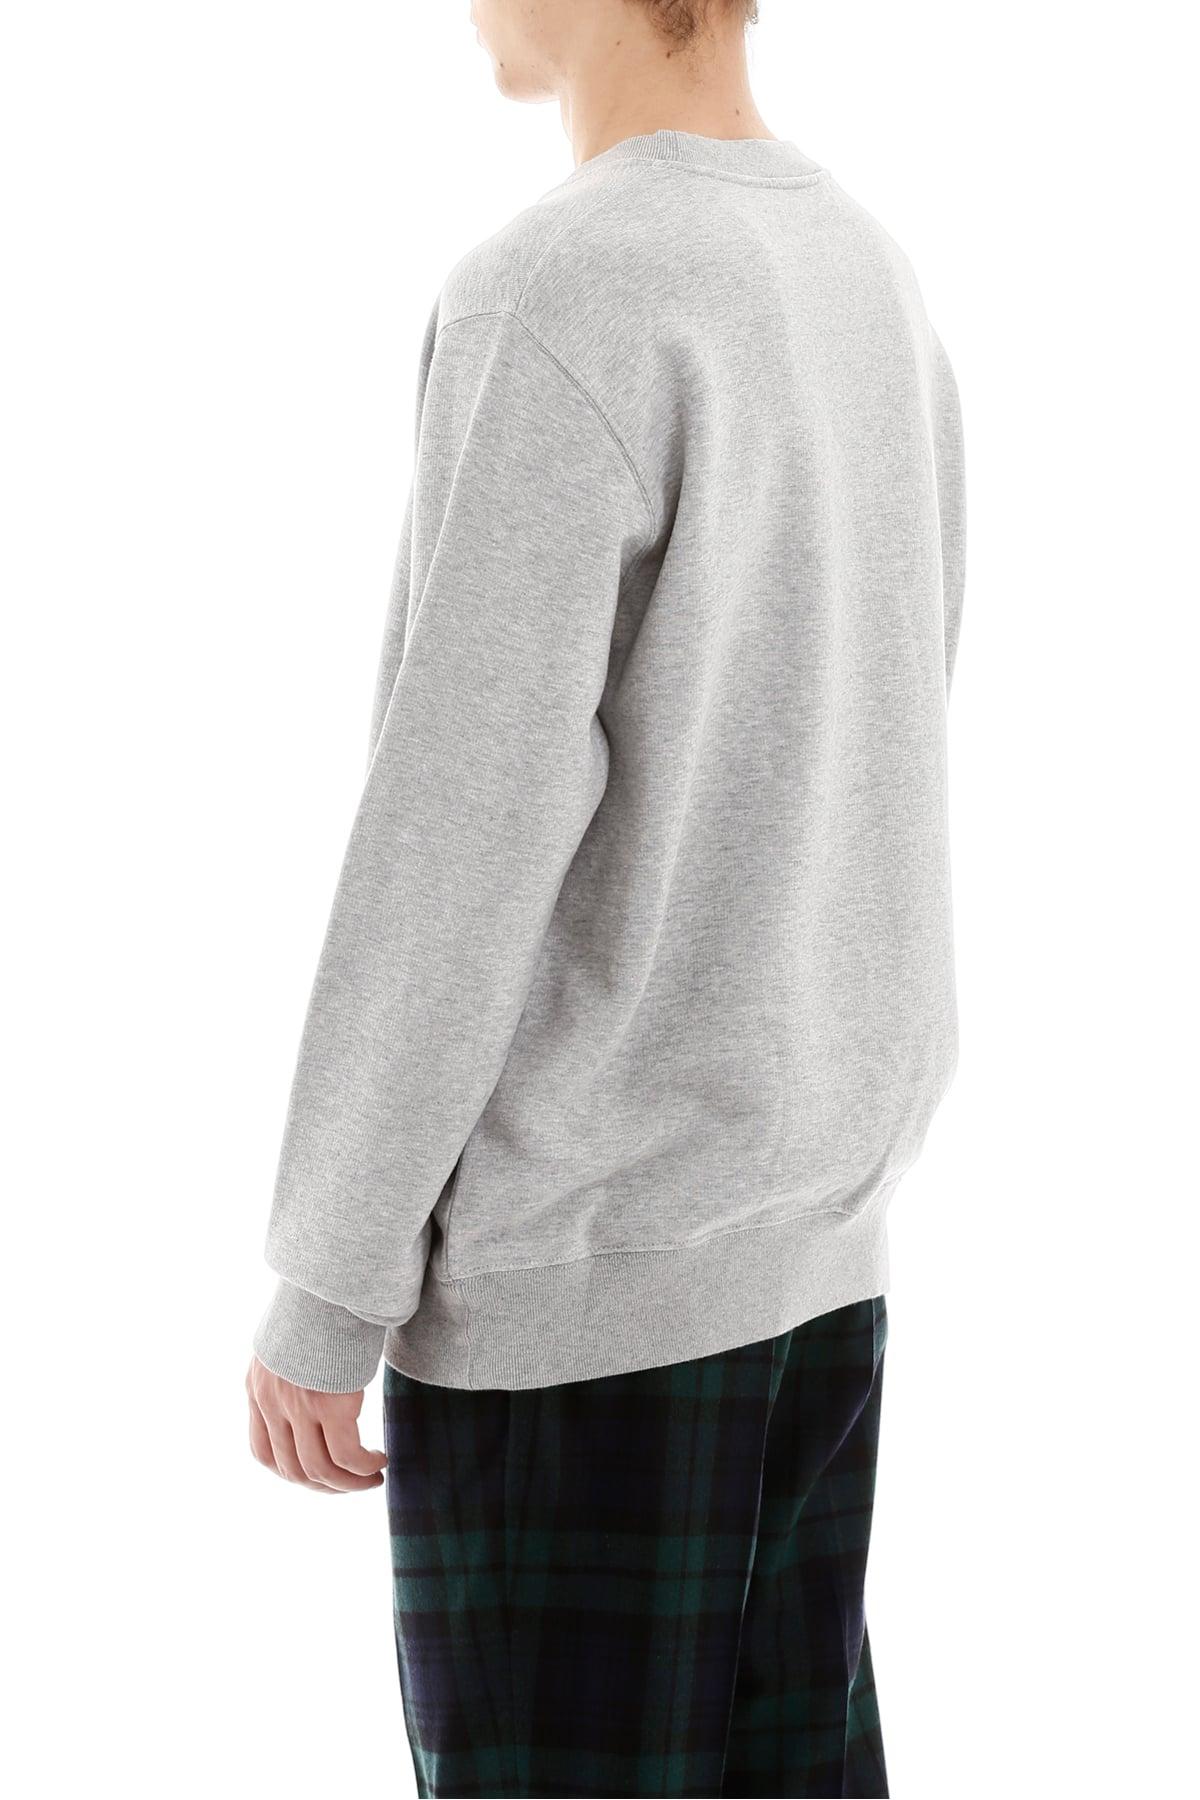 Golden Goose Goose Grey Cotton Sweatshirt in Gray for Men | Lyst